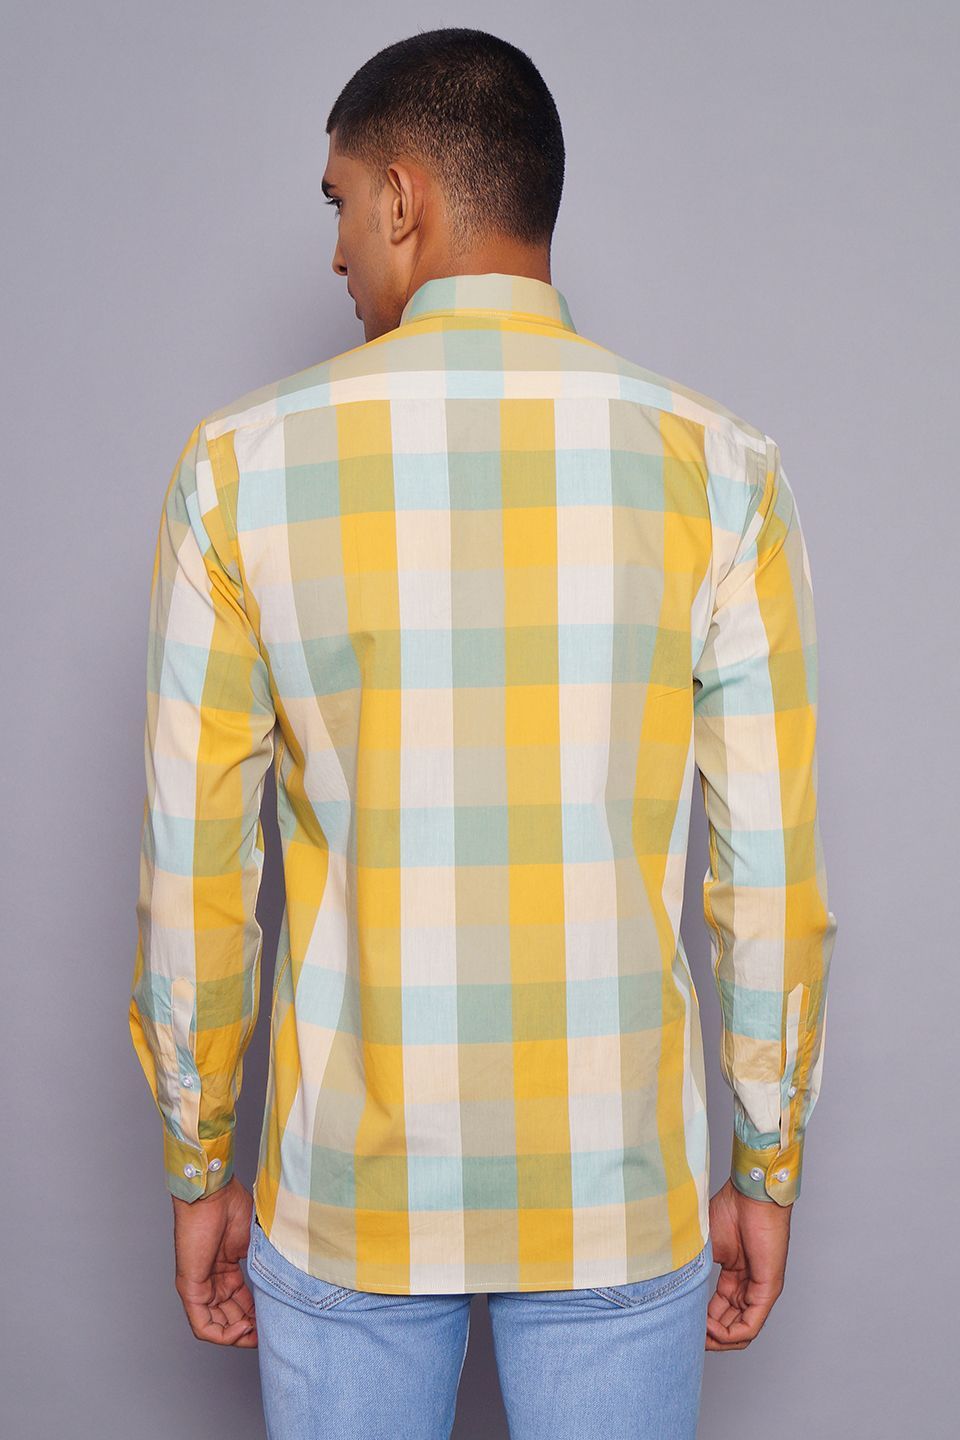 100% Premium Cotton Multicolored Check Shirt